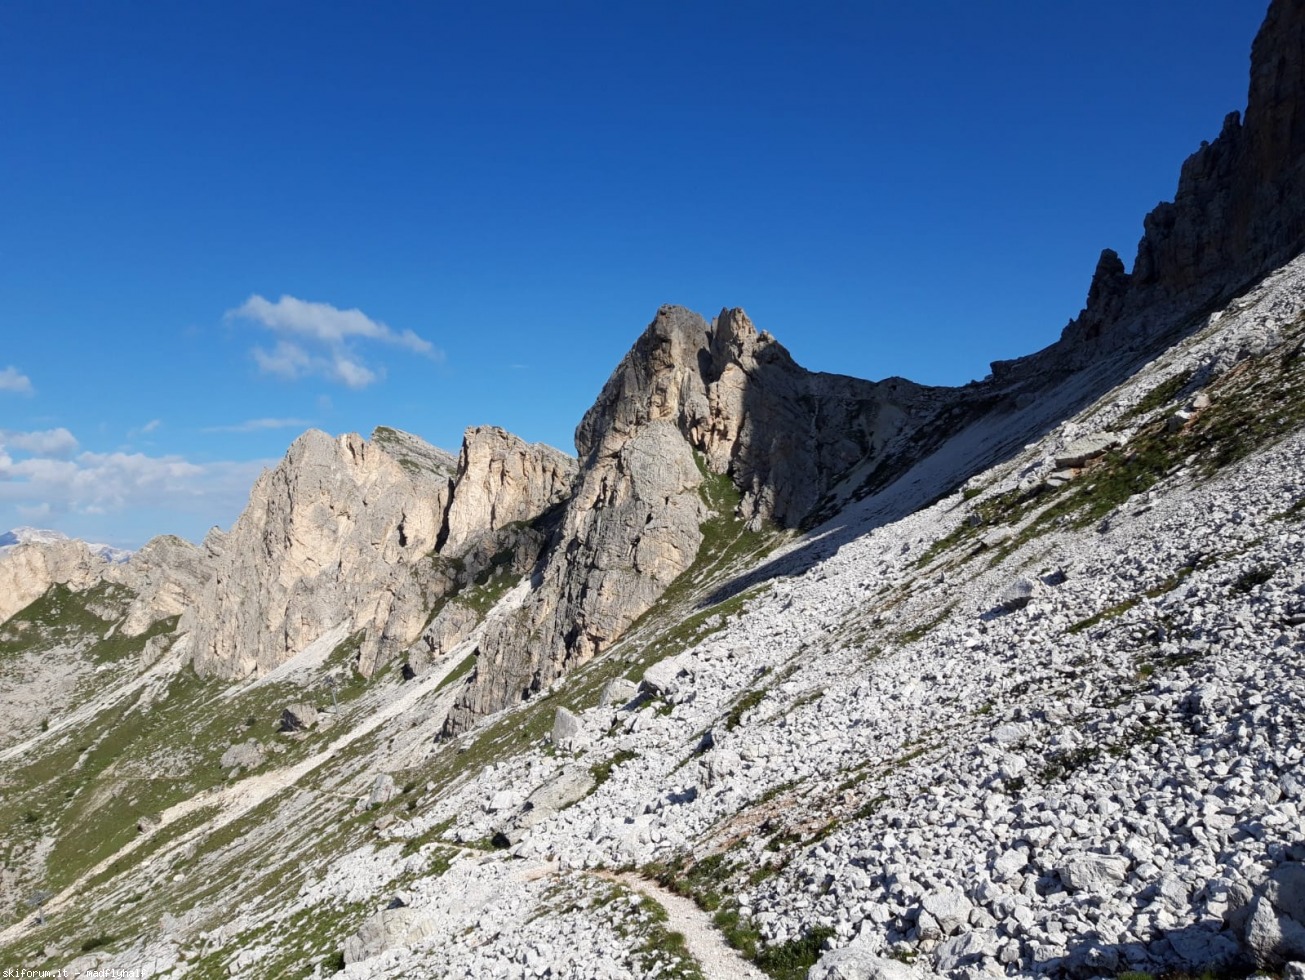 Climb] Vipera, prati e stelle alpine (e un'immane figura di...) | SkiForum  - Sci, turismo, sport e passione